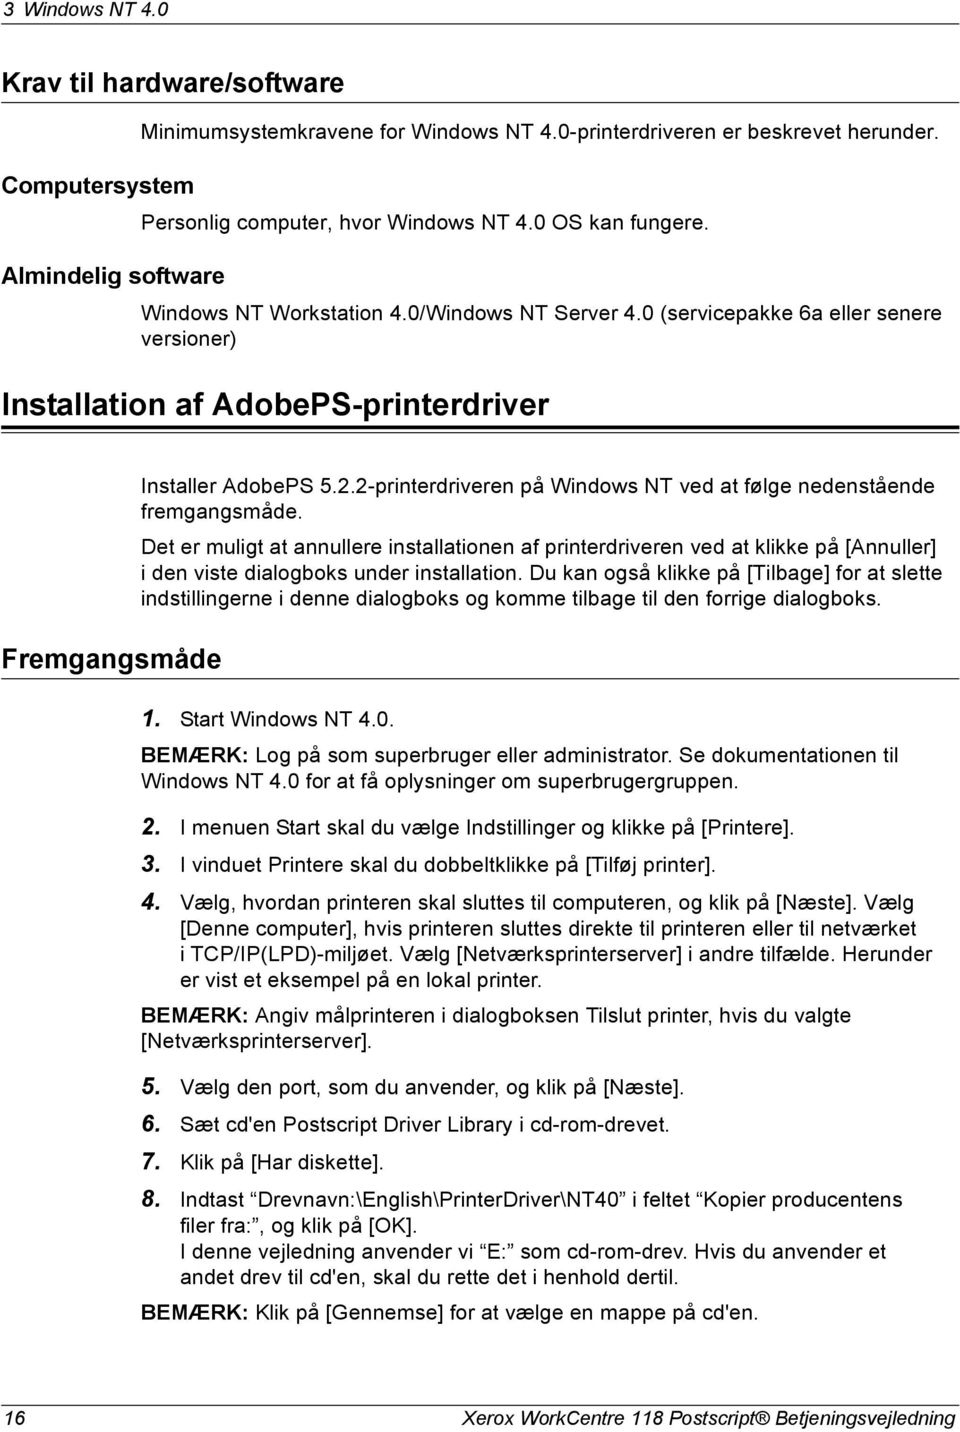 2-printerdriveren på Windows NT ved at følge nedenstående fremgangsmåde.